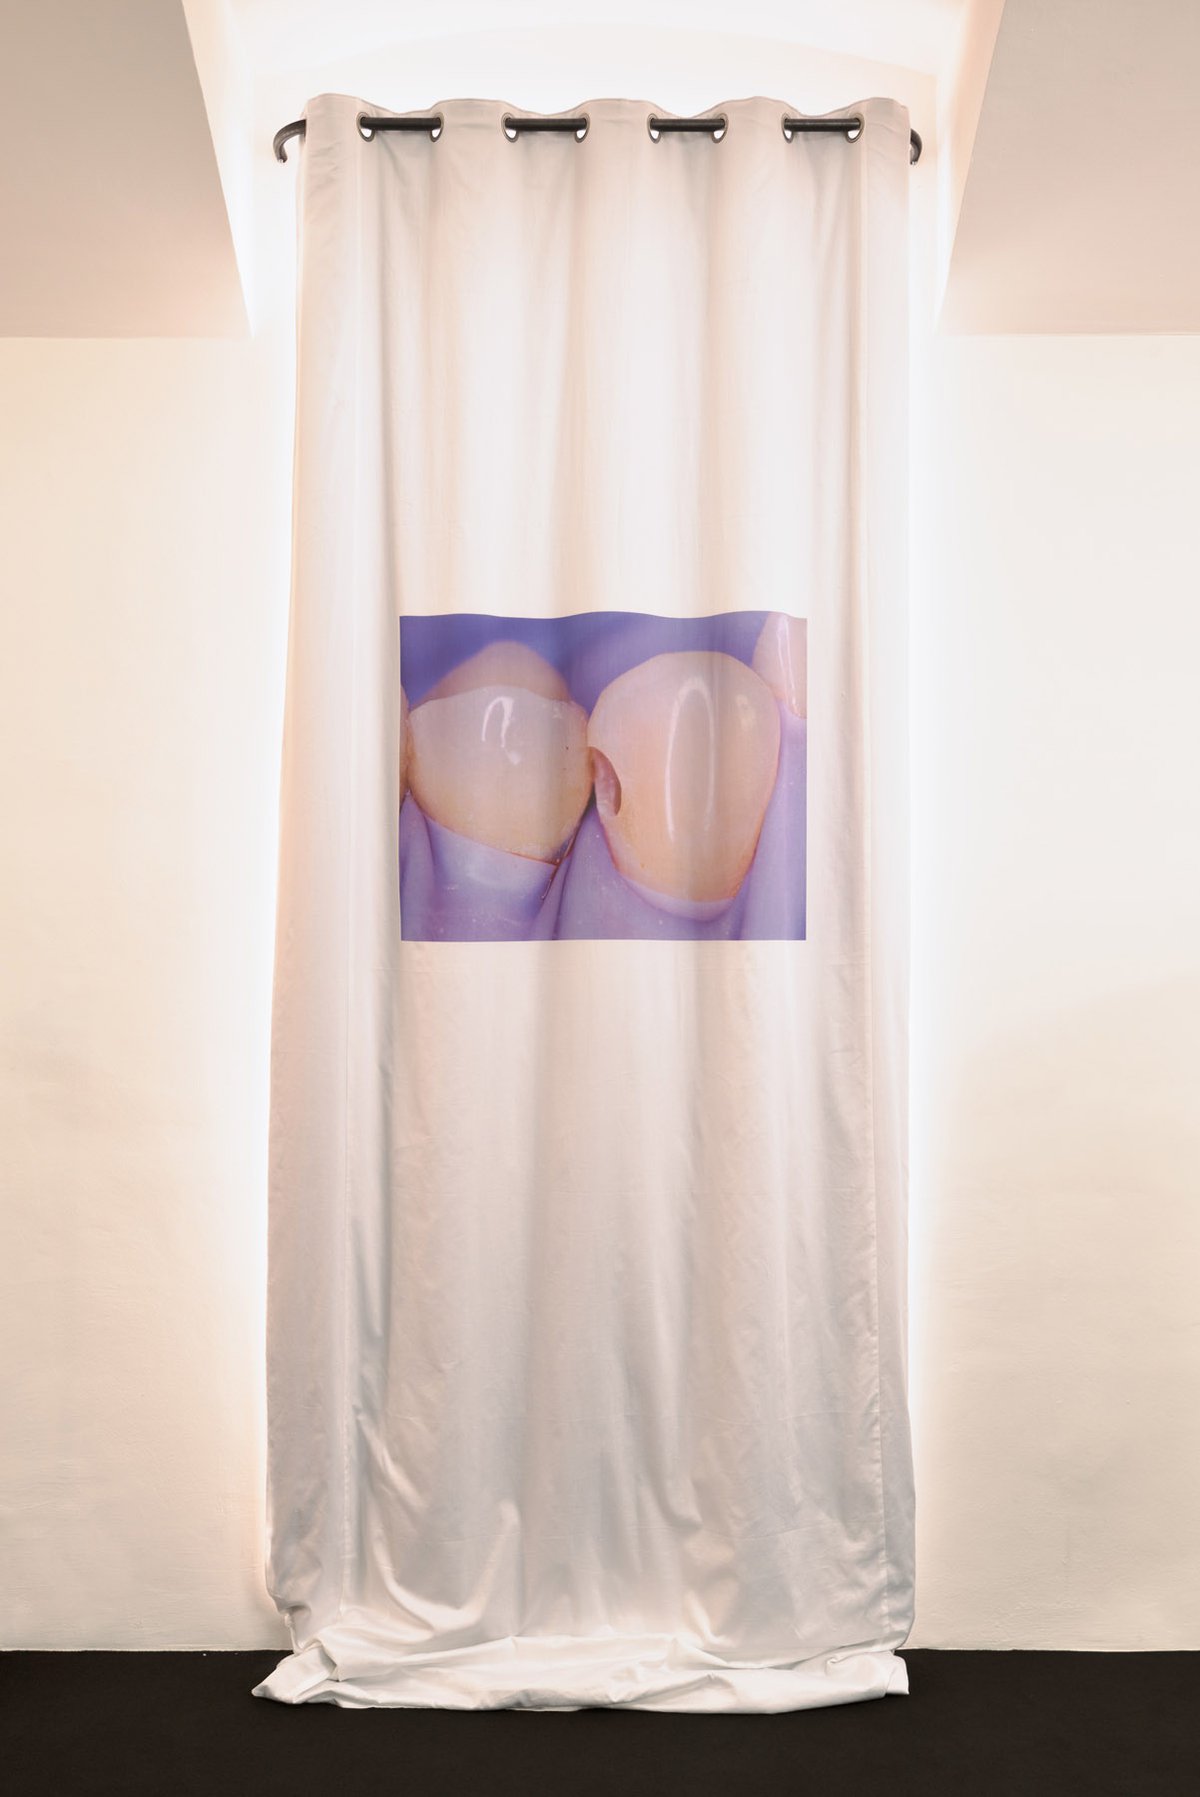 Lili Reynaud-DewarUntitled, 2016Curtain, digital print on cotton400 x 180 cm